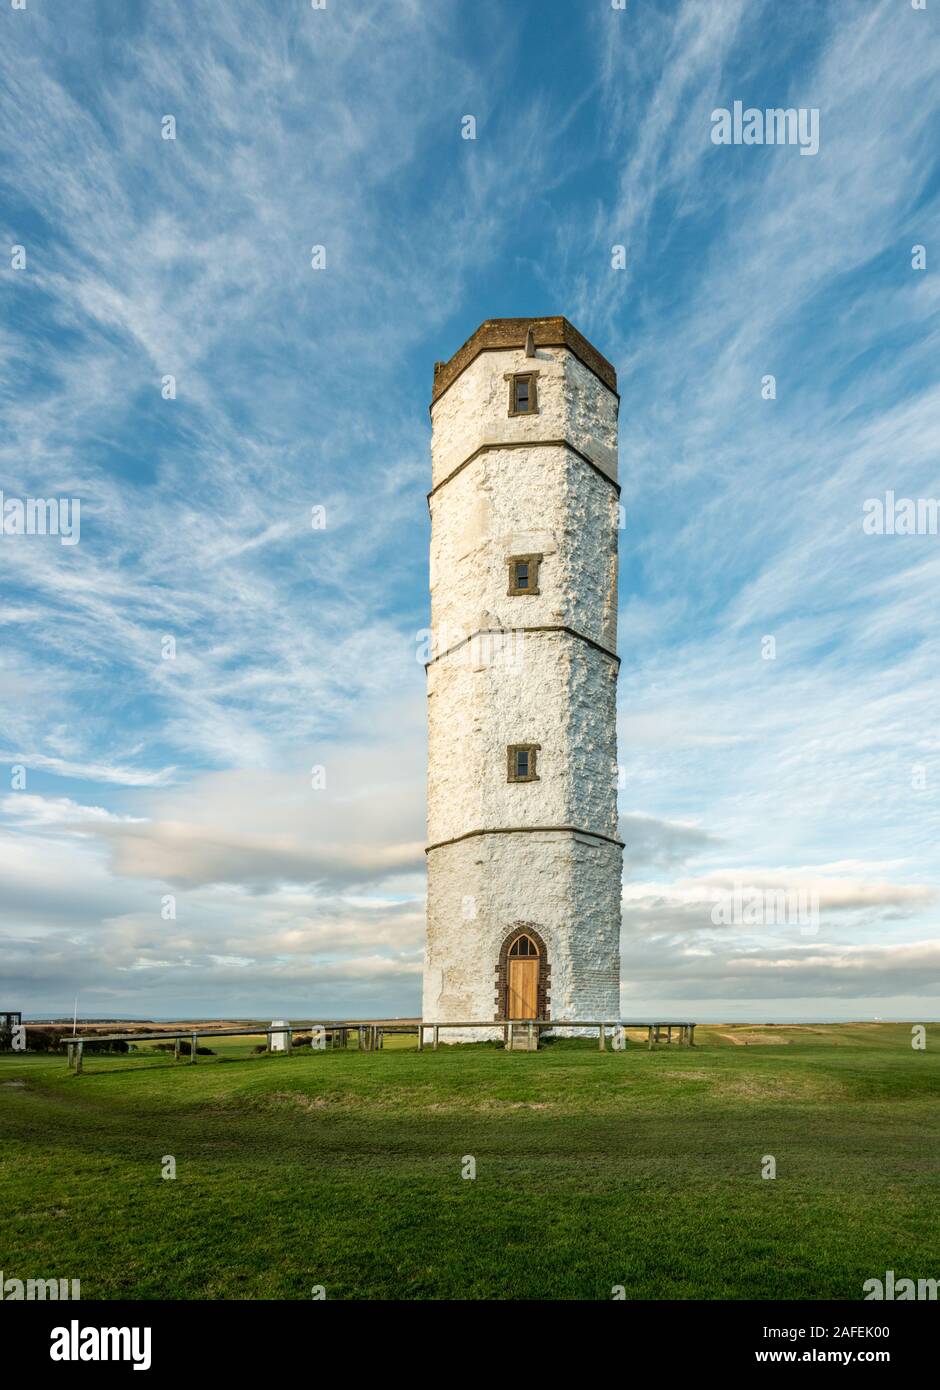 La vecchia torre di gesso elencato la costruzione a Flamborough Head con uno splendido sfondo del cielo, East Riding of Yorkshire, Regno Unito Foto Stock